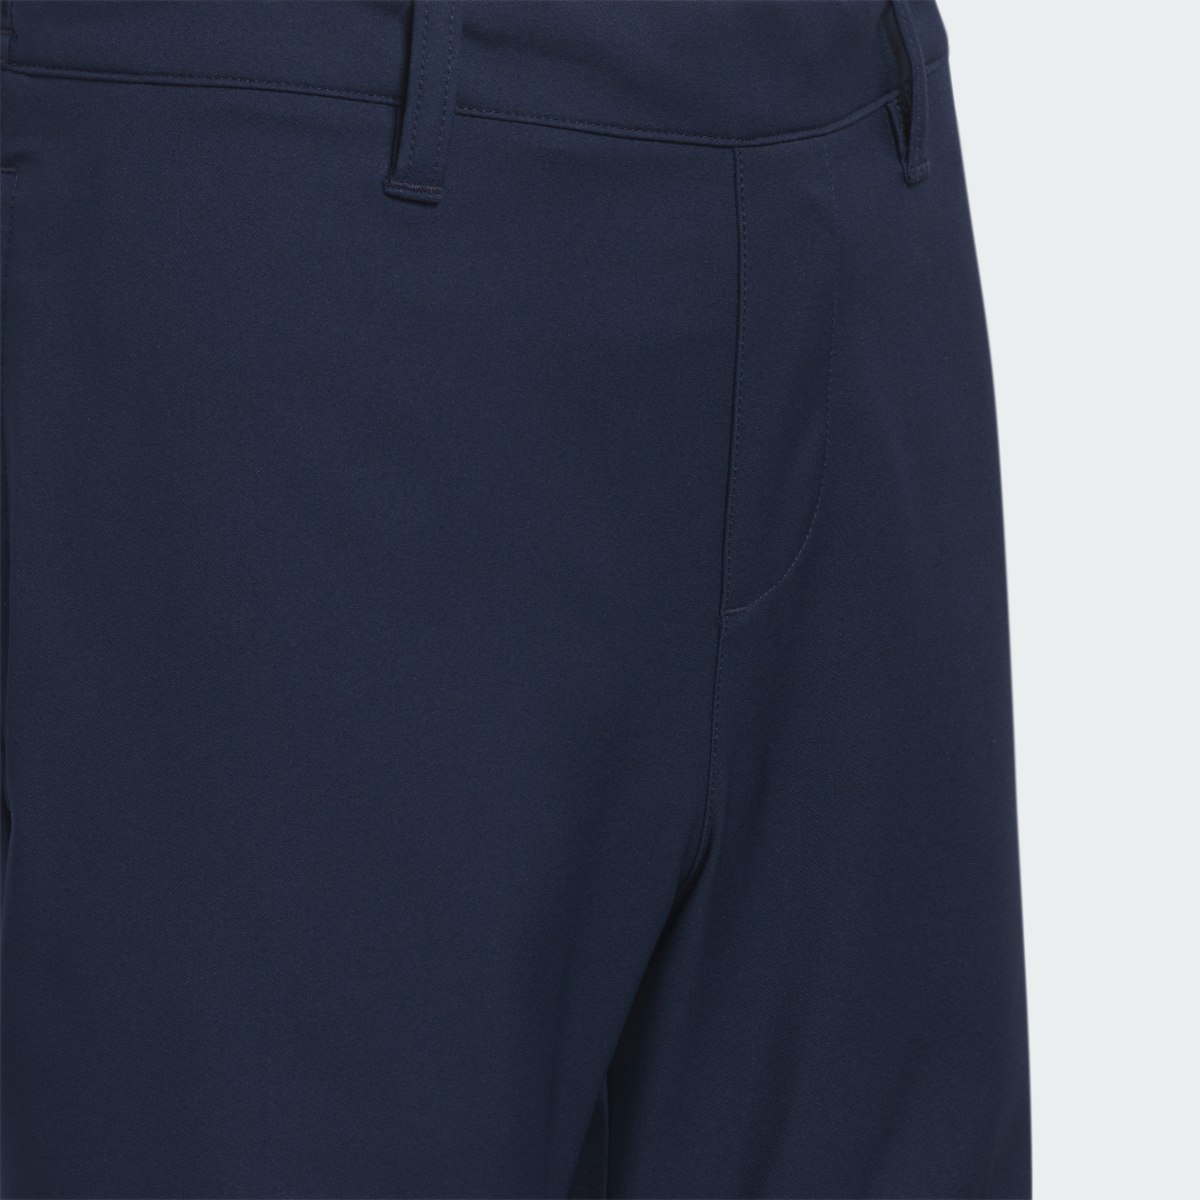 Adidas Pantalón corto Ultimate365 Adjustable (Adolescentes). 4